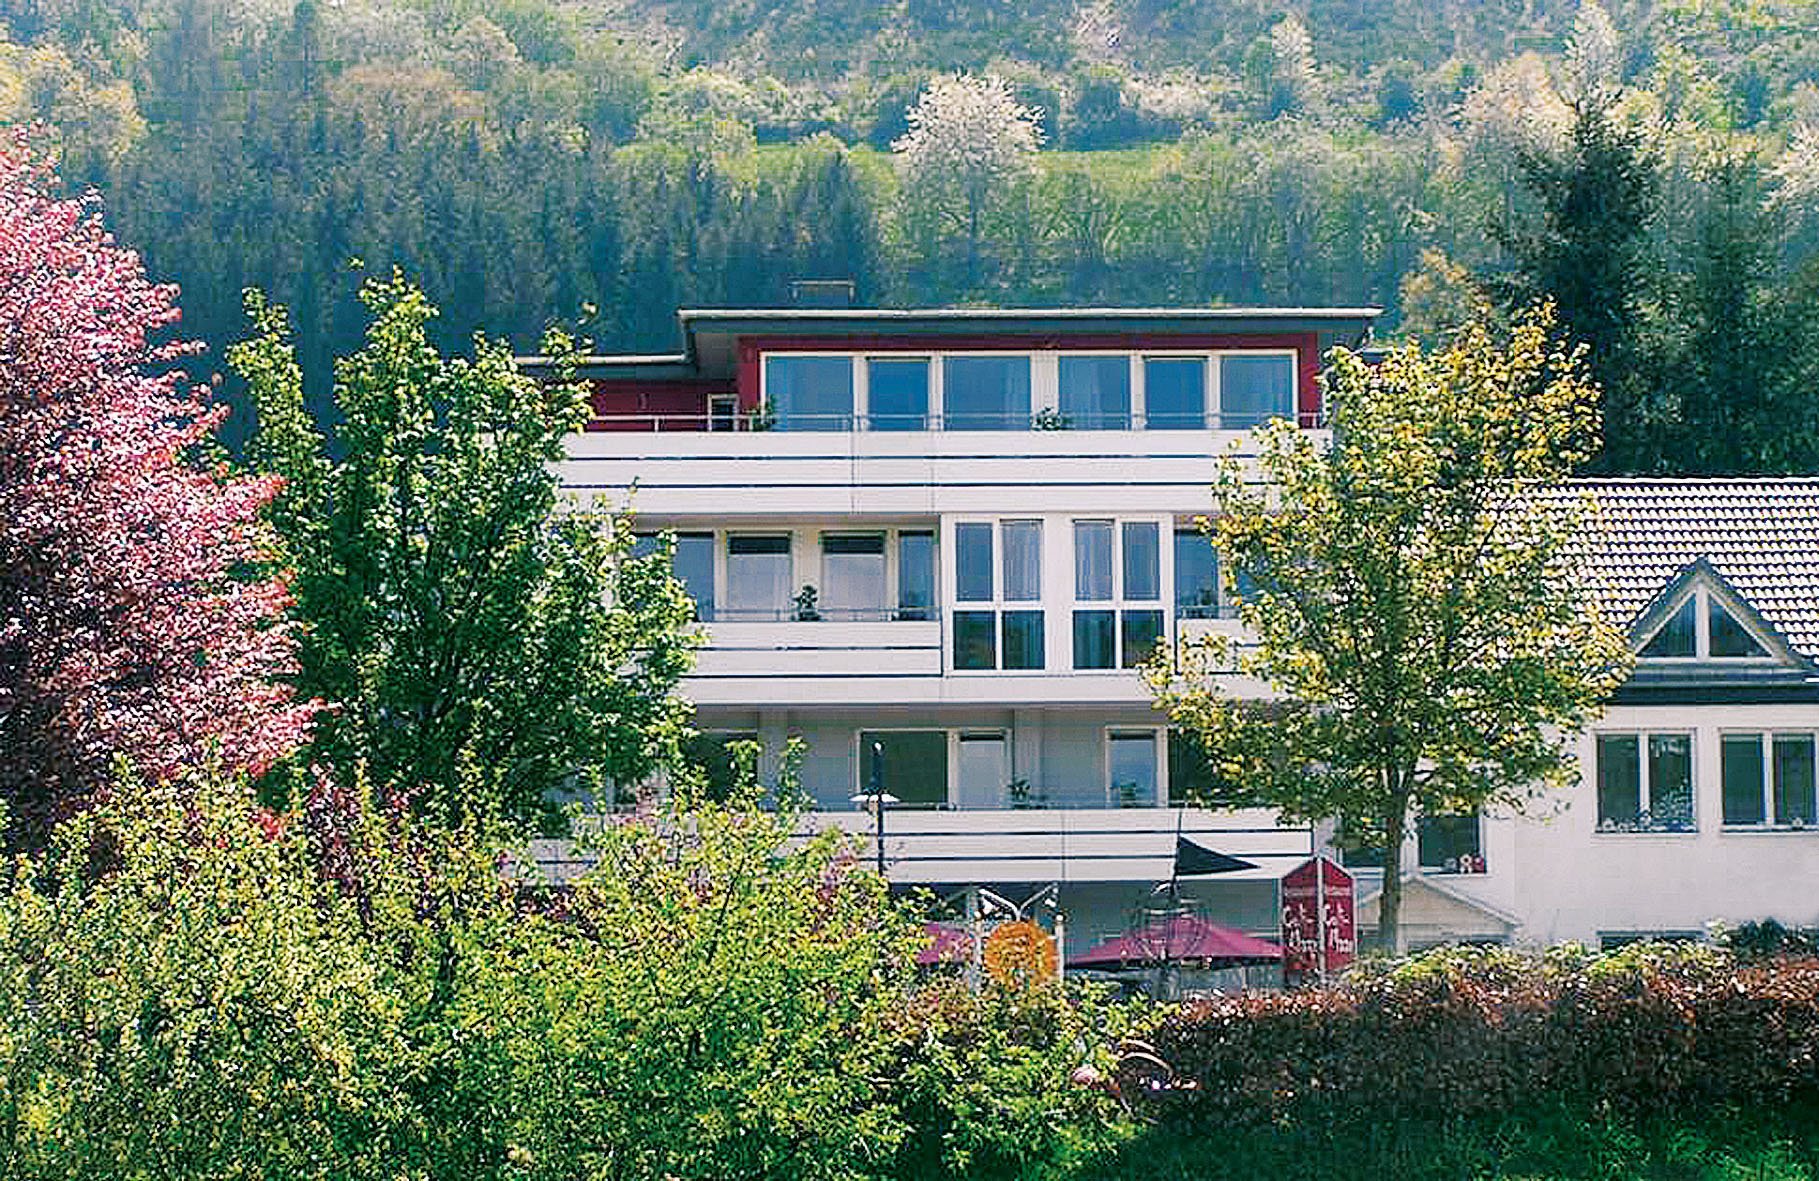 3 Tage Auszeit Vulkaneifel – Landhotel Maarium (3.5 Sterne) in Meerfeld, Rheinland-Pfalz